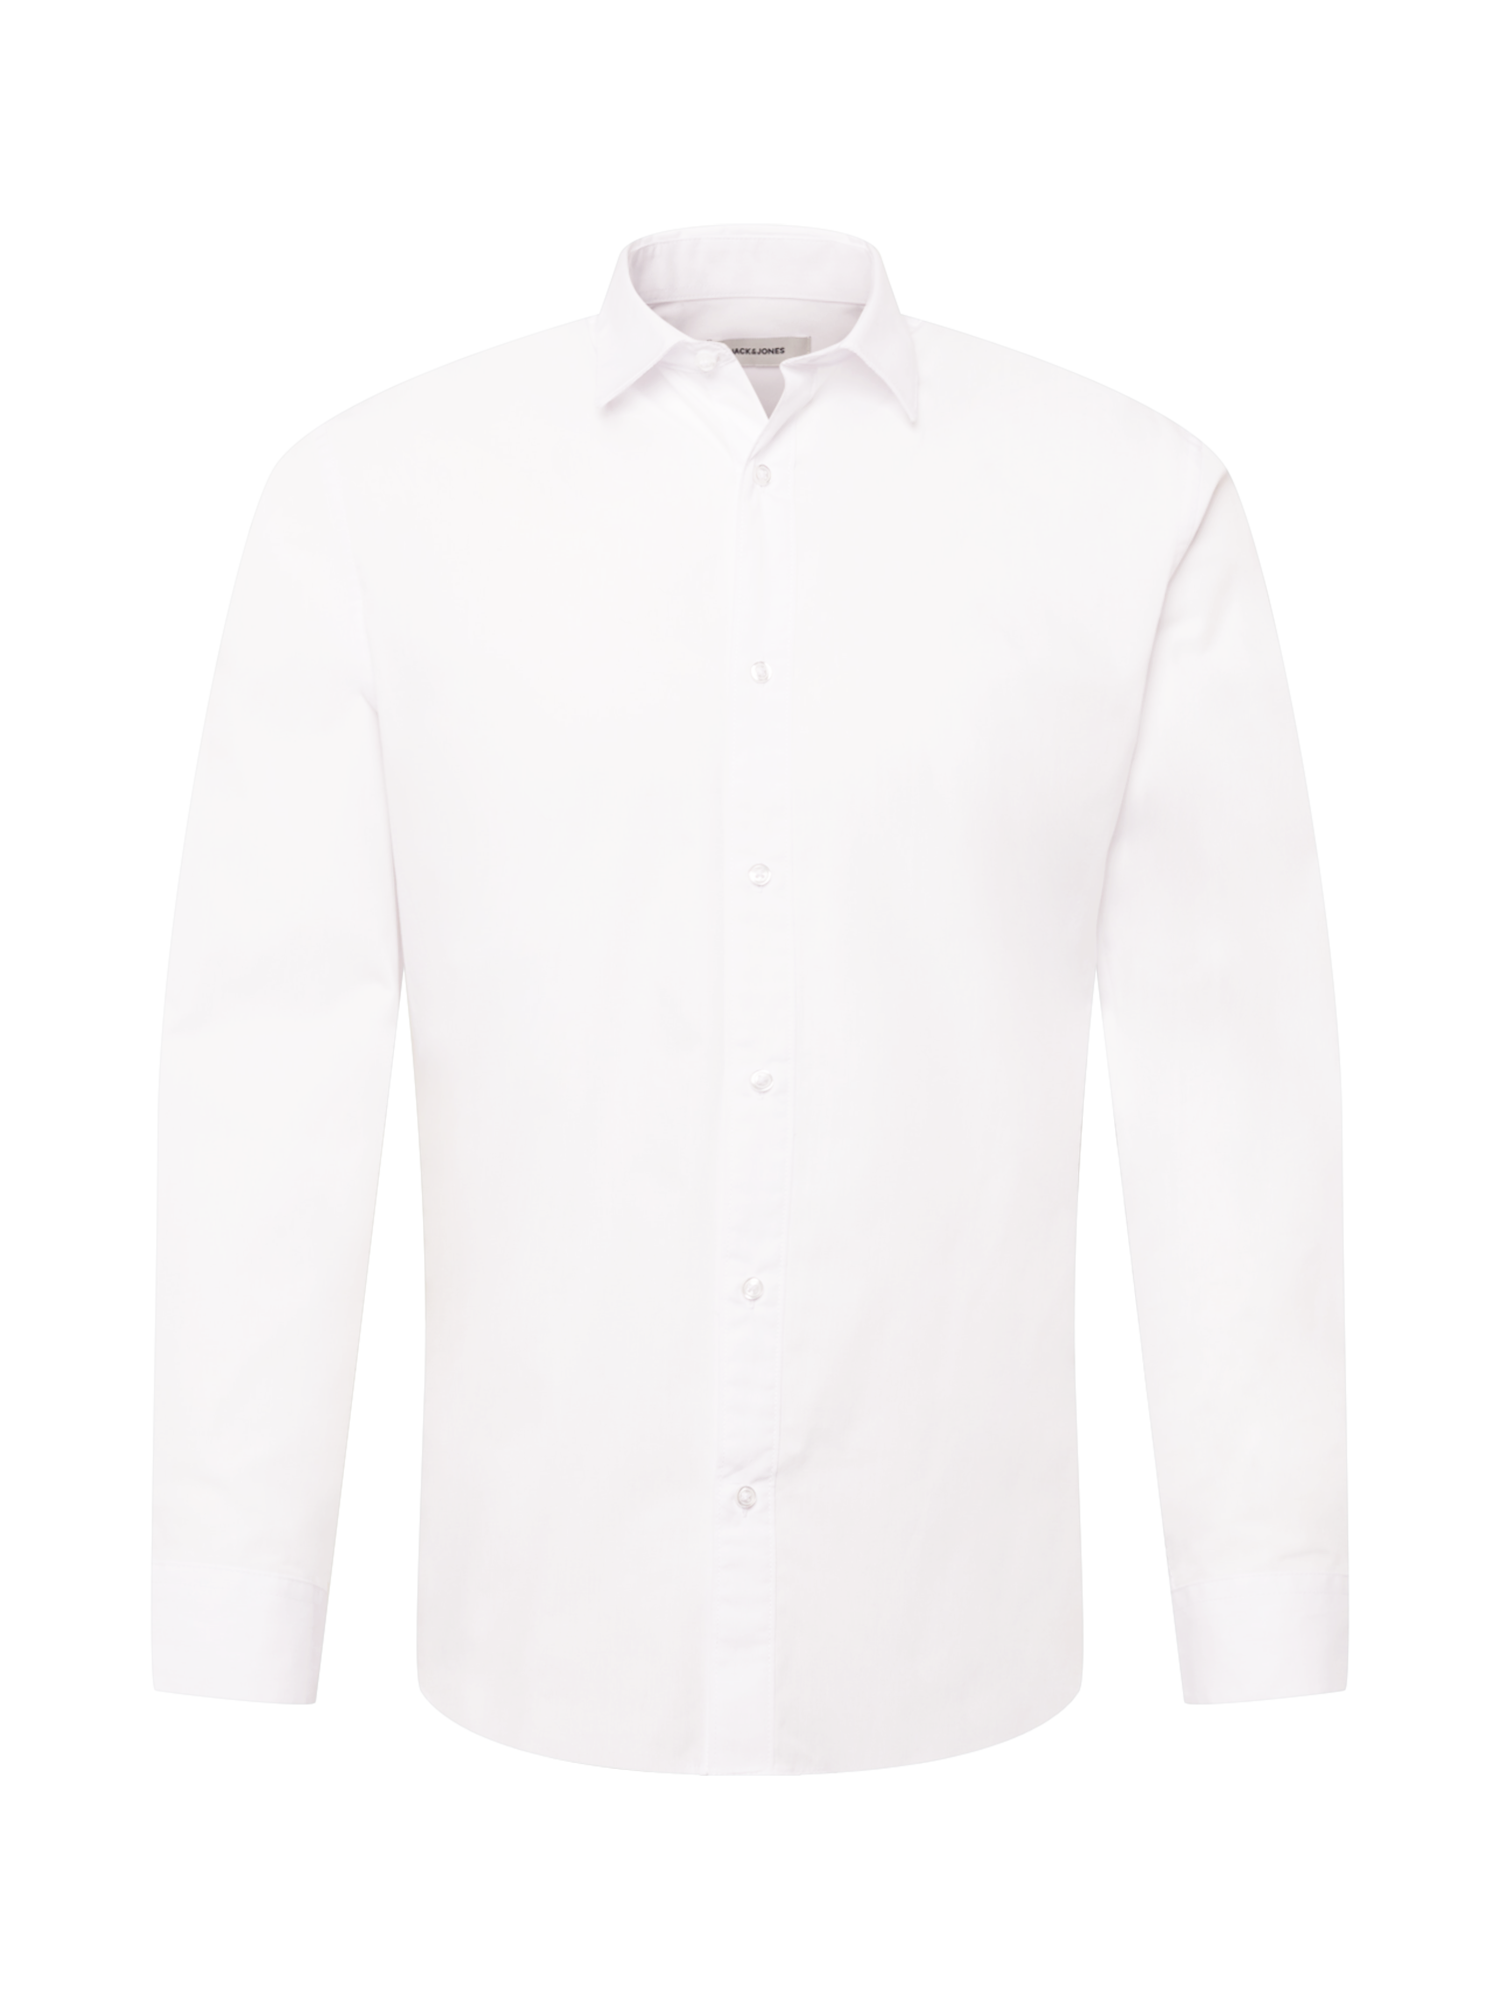 Abbigliamento Uomo JACK & JONES Camicia JOE in Bianco 